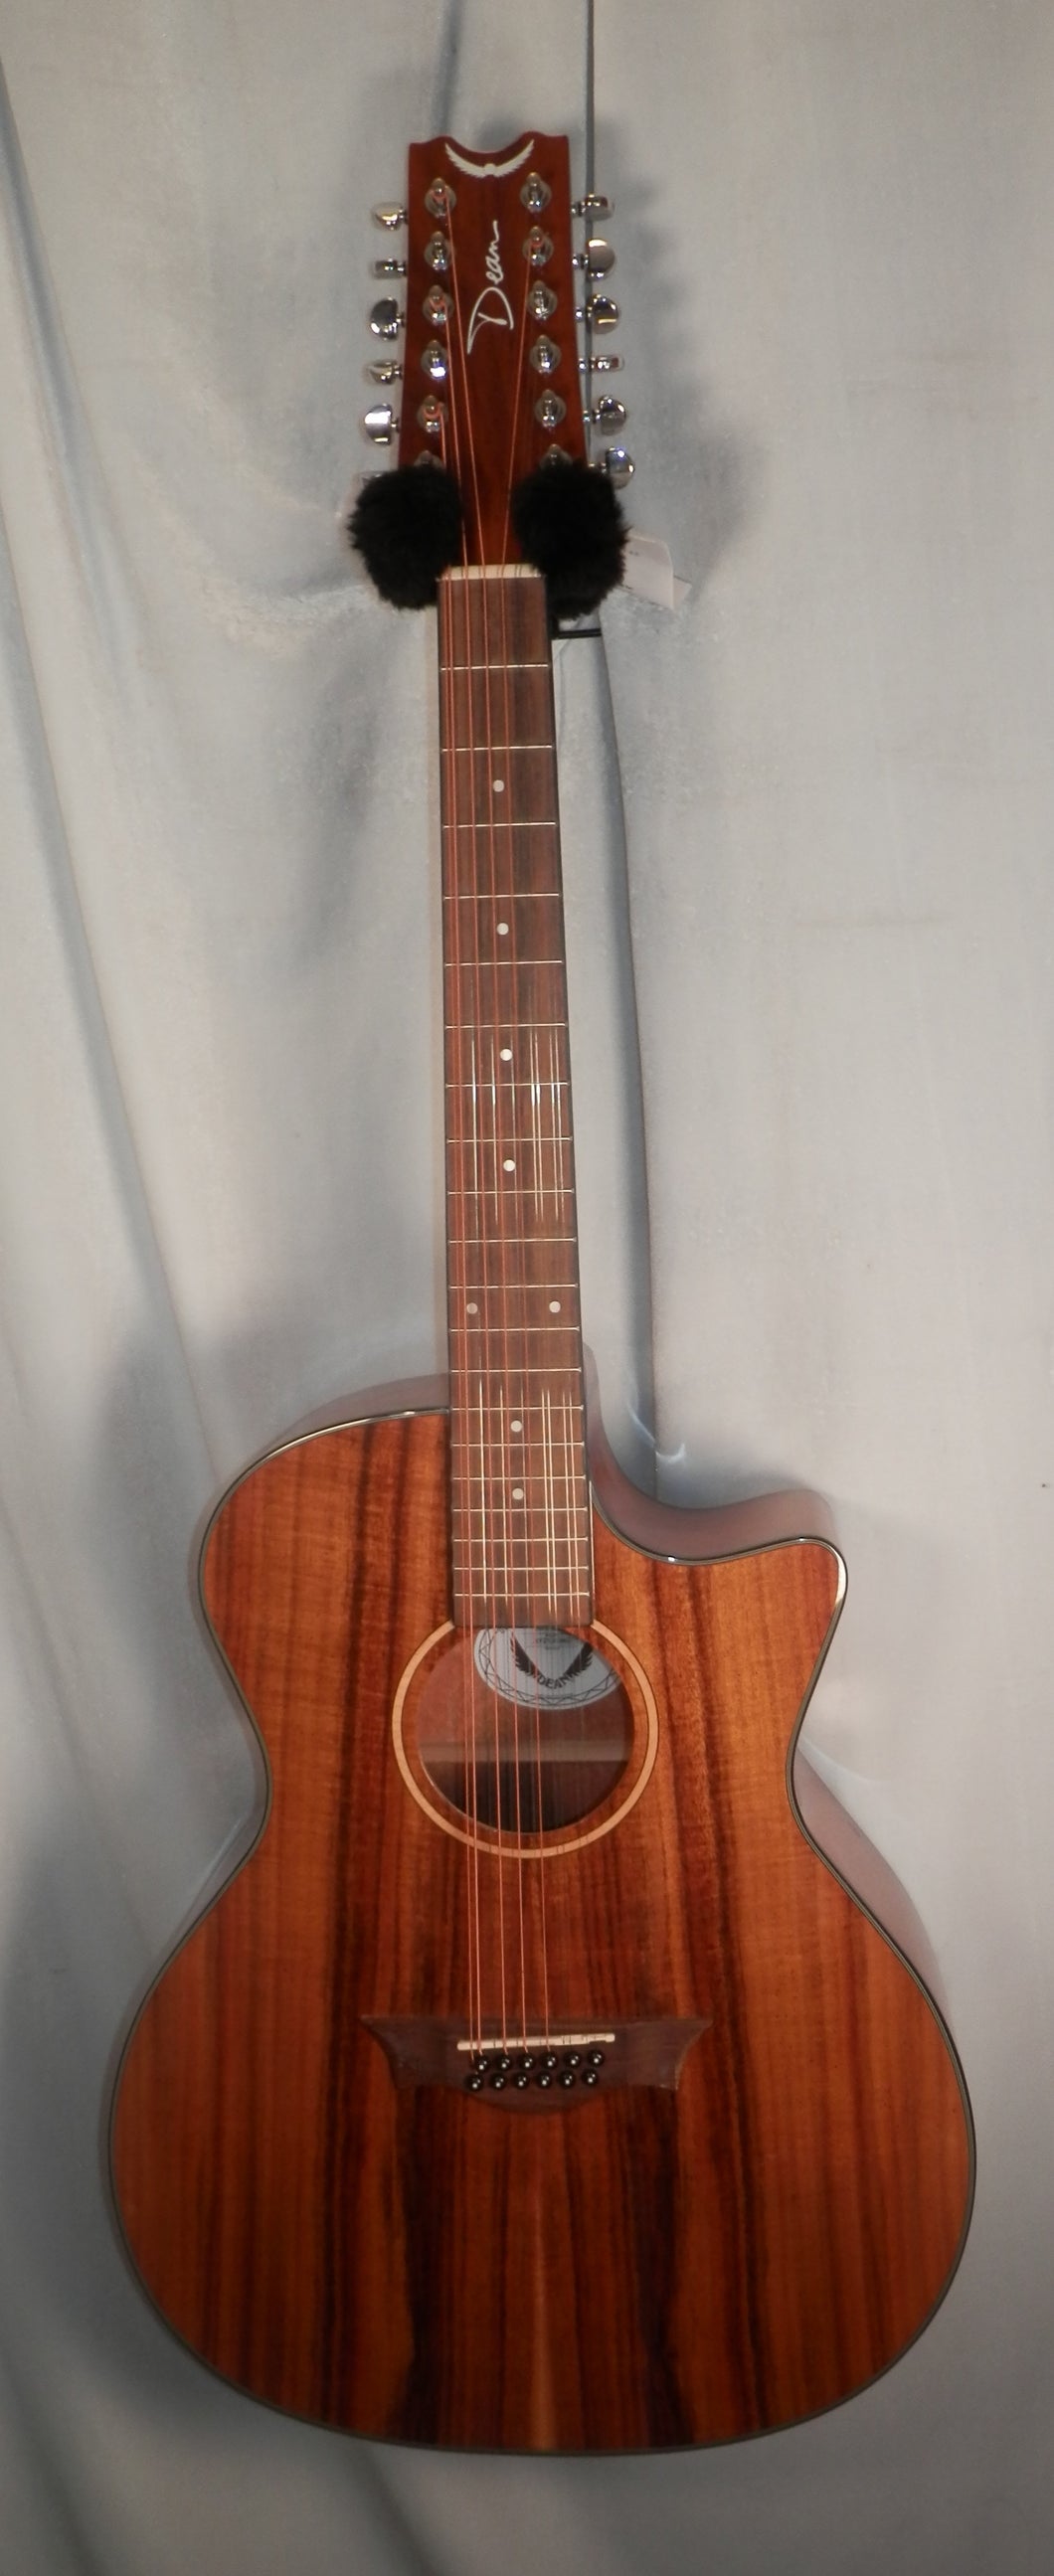 Dean AX E KOA 12 12-string Cutaway Acoustic Electric Guitar new